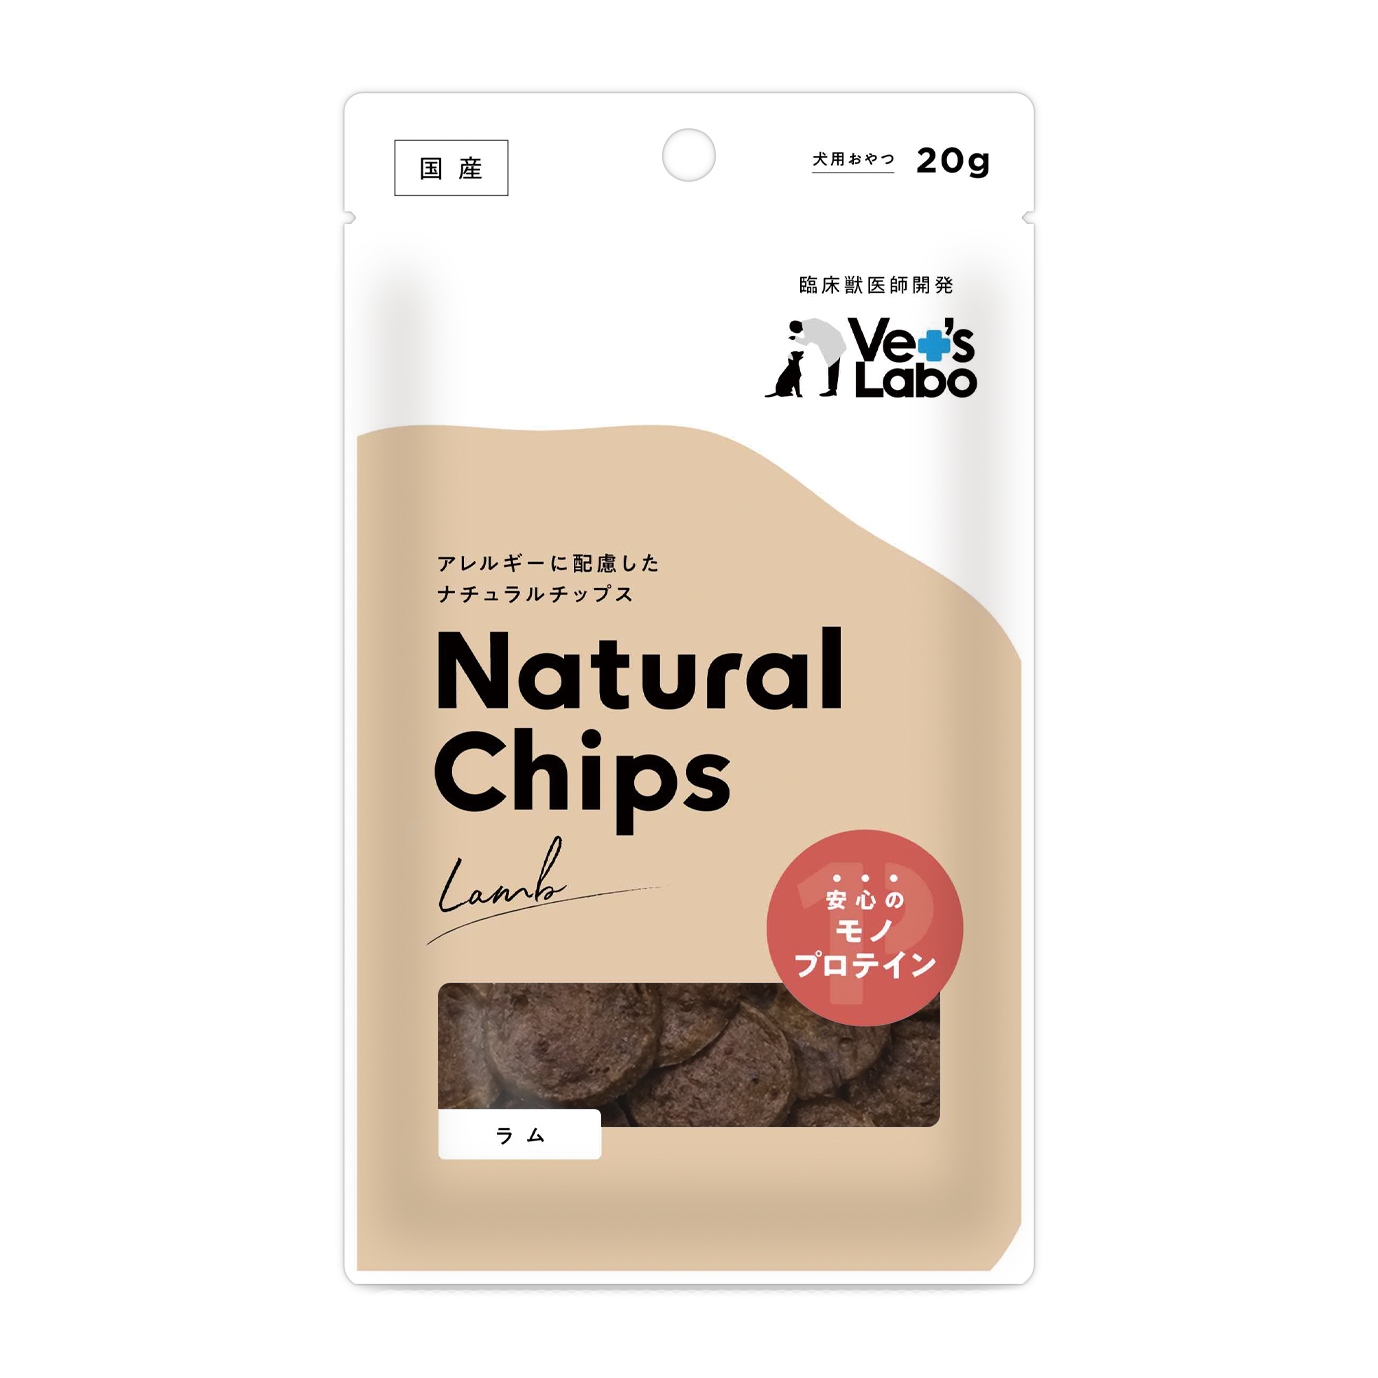 Natural Chips ラム